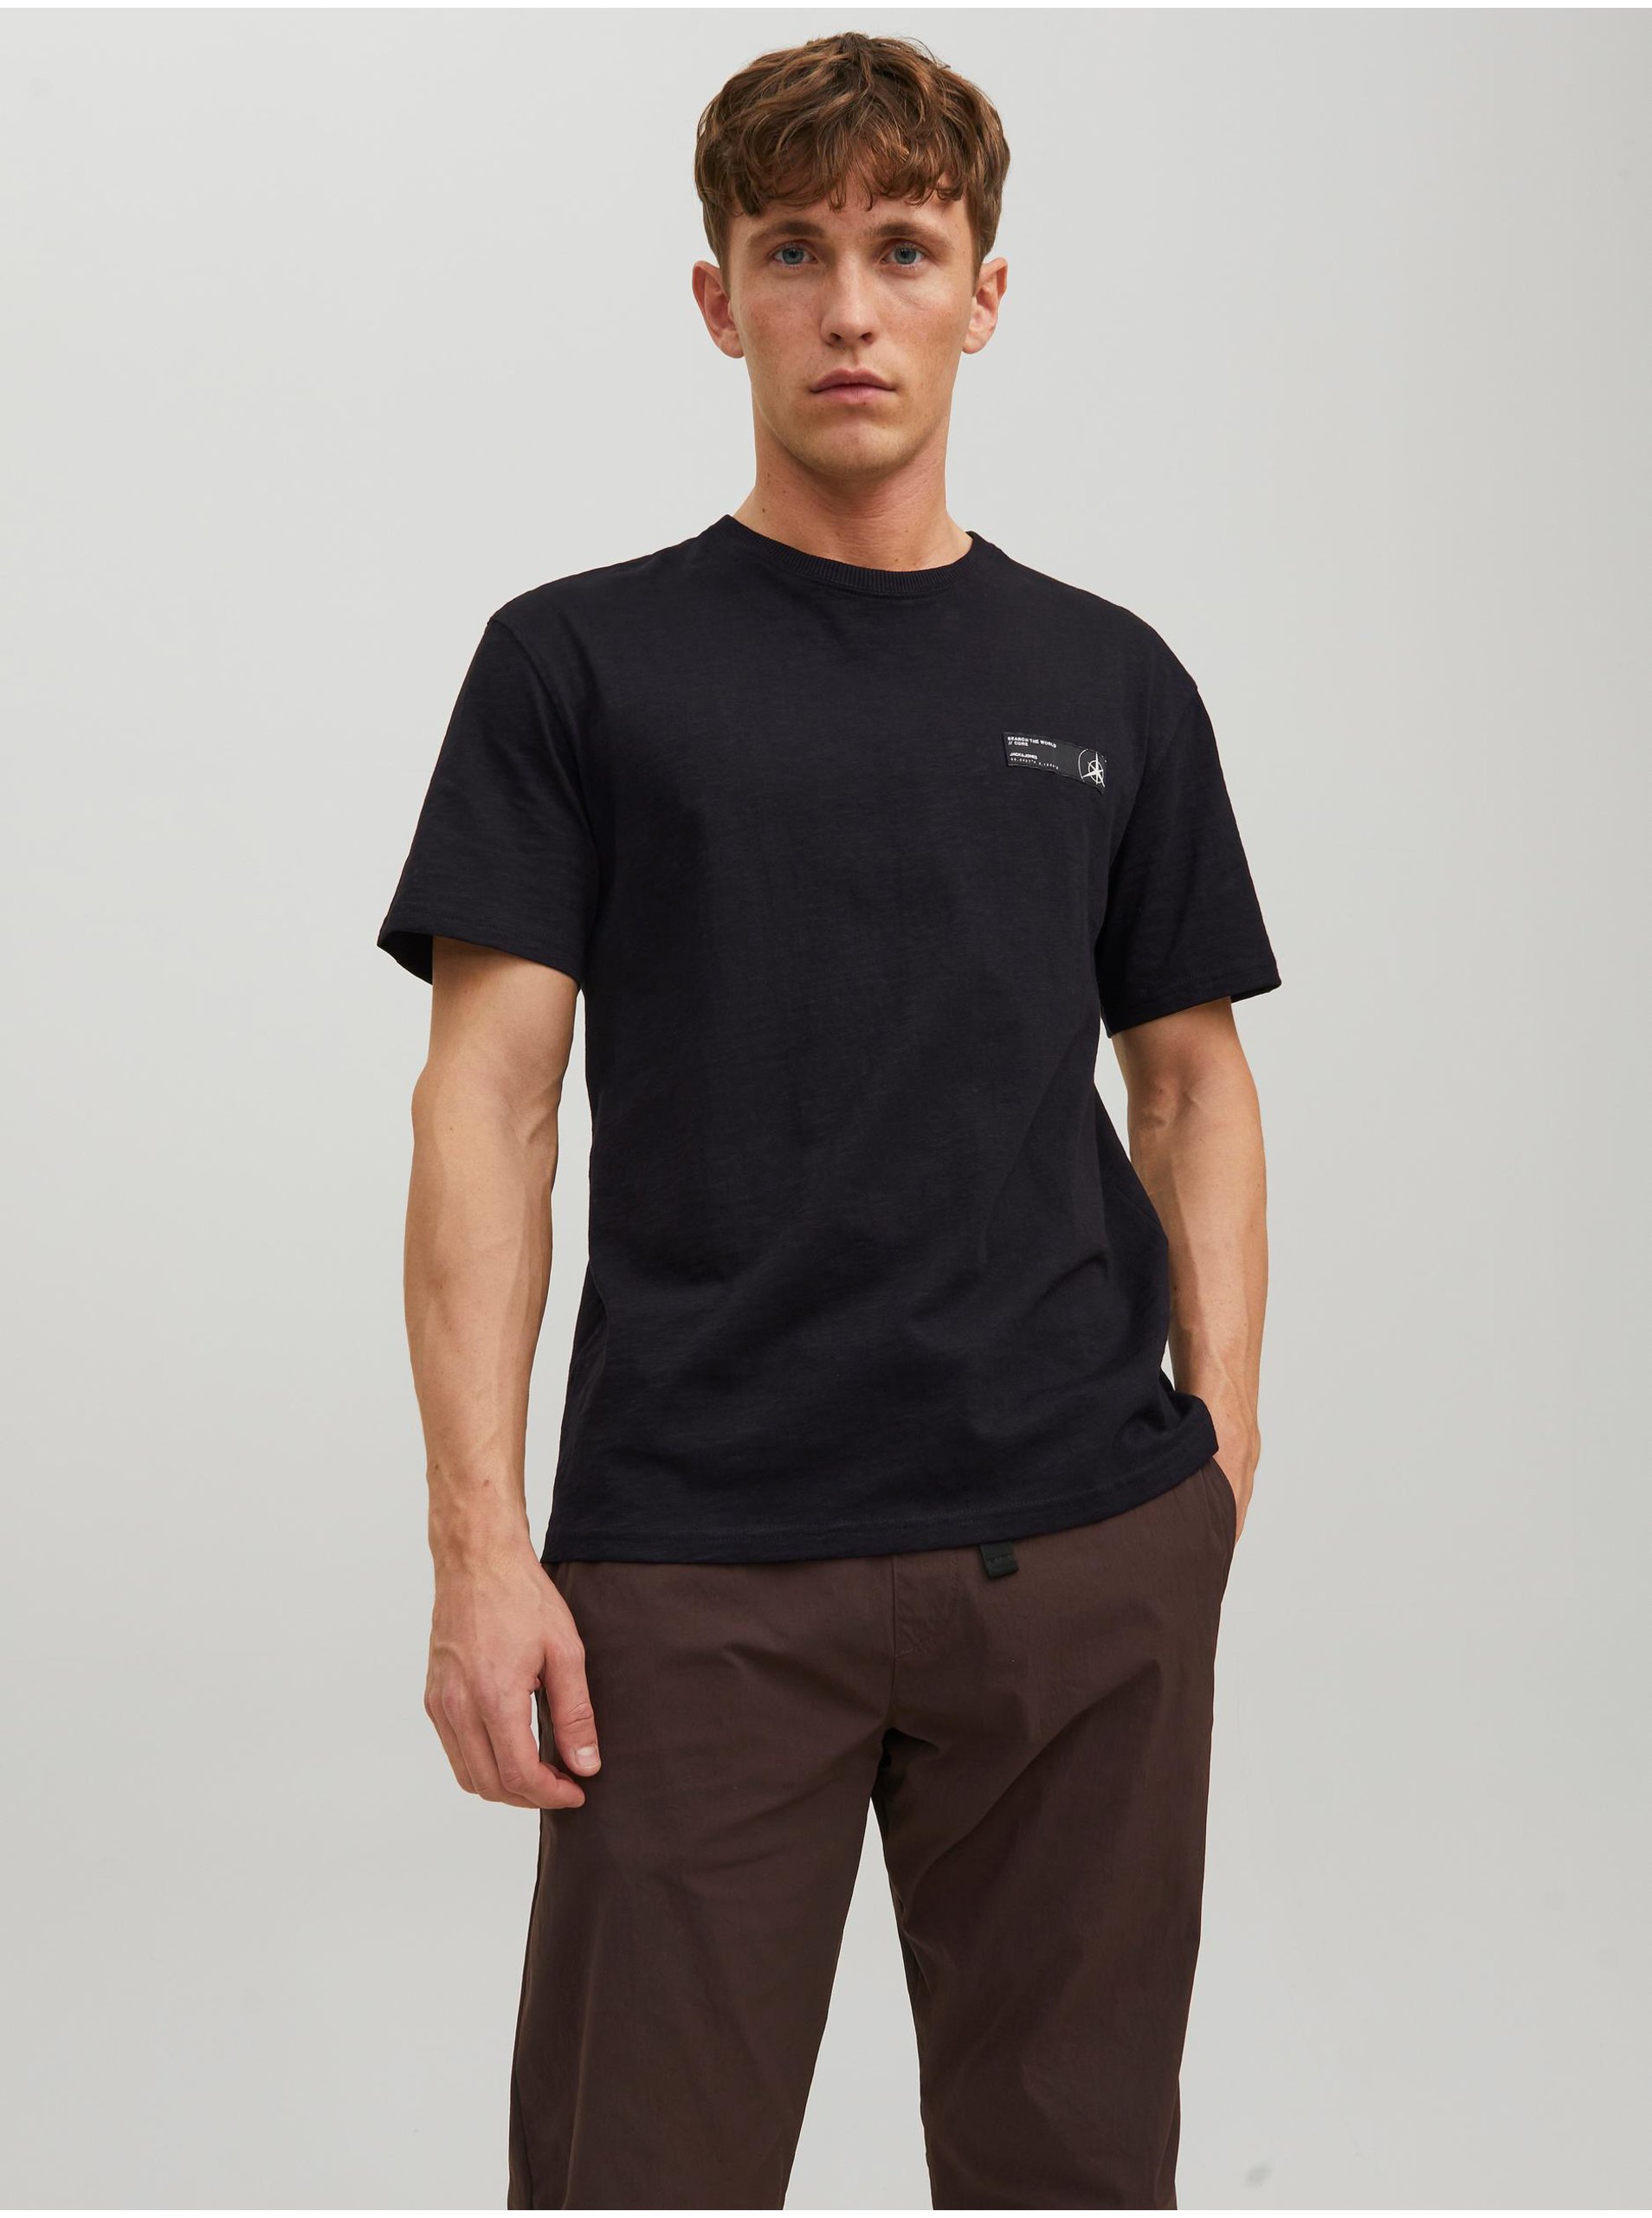 Lacno Čierne pánske tričko s potlačou na chrbte Jack & Jones Navigator